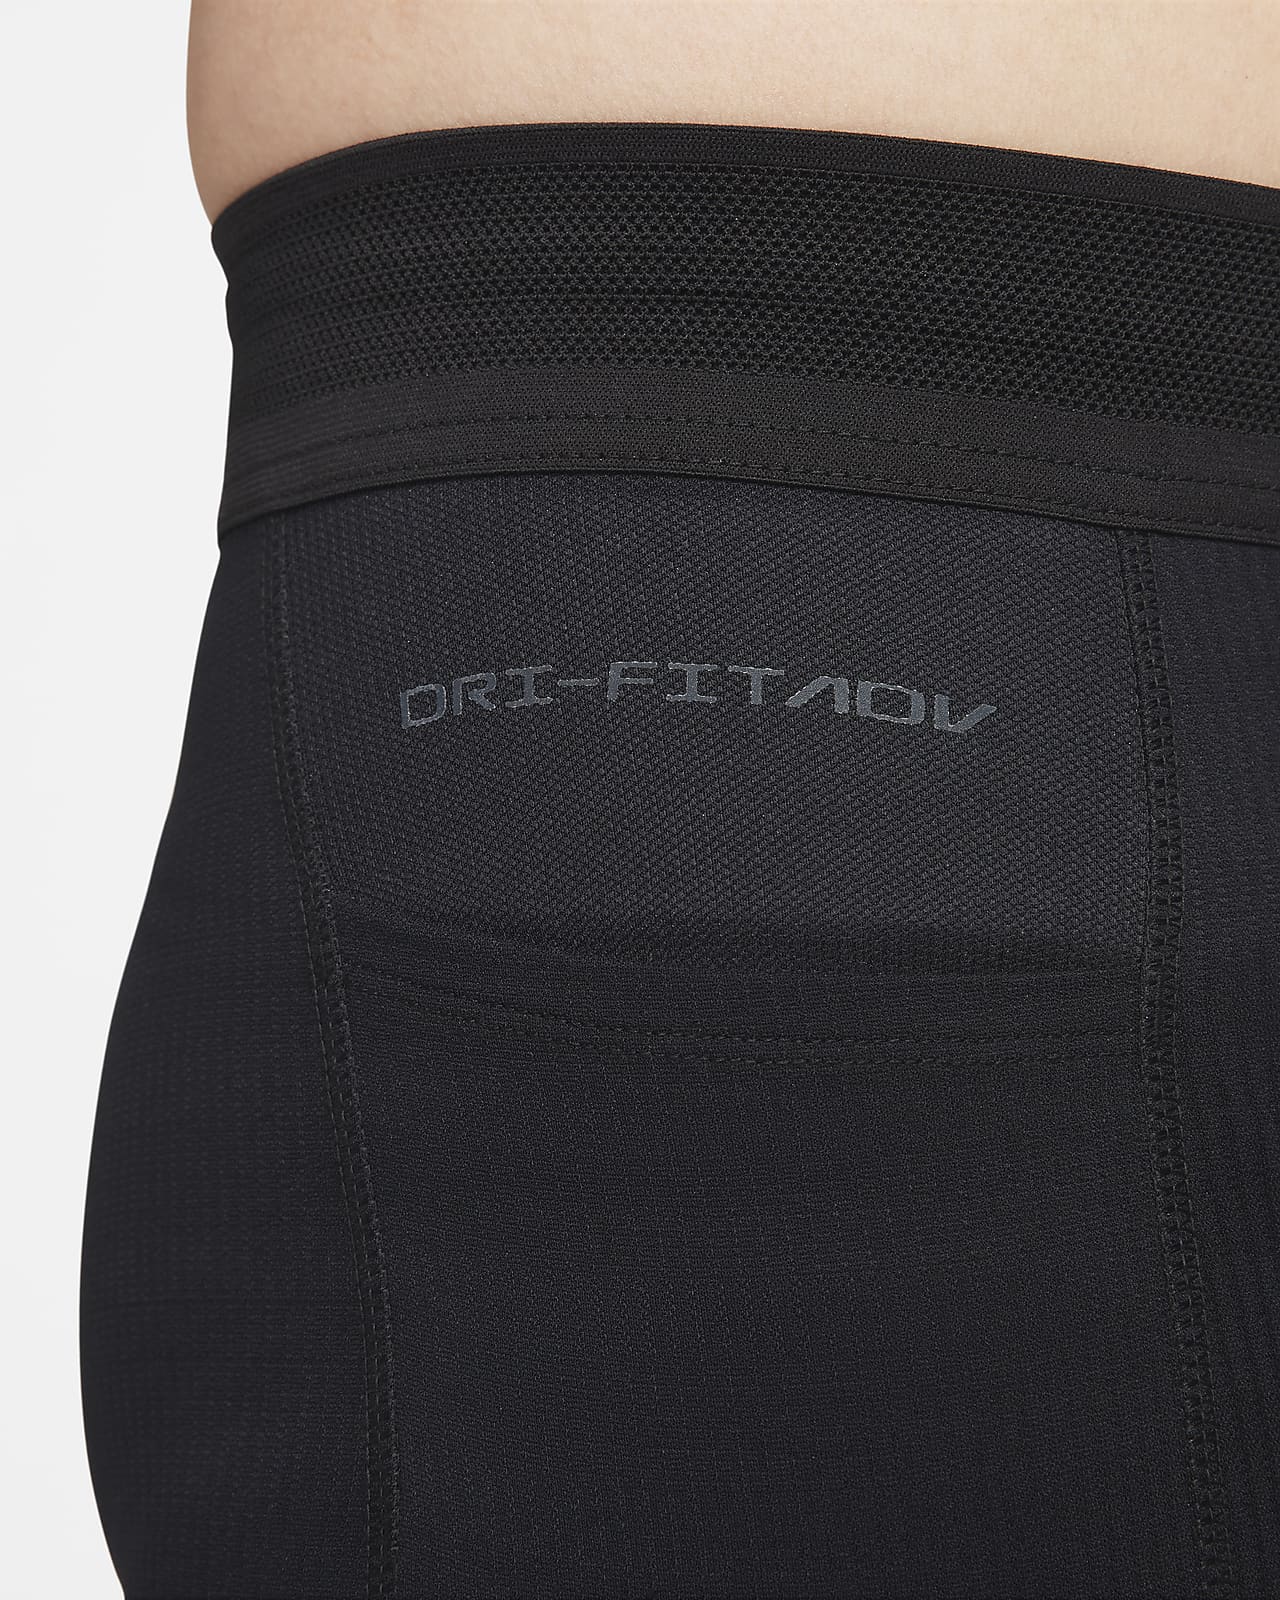 Nike Running Runway warm leggings in black - ShopStyle Activewear Trousers